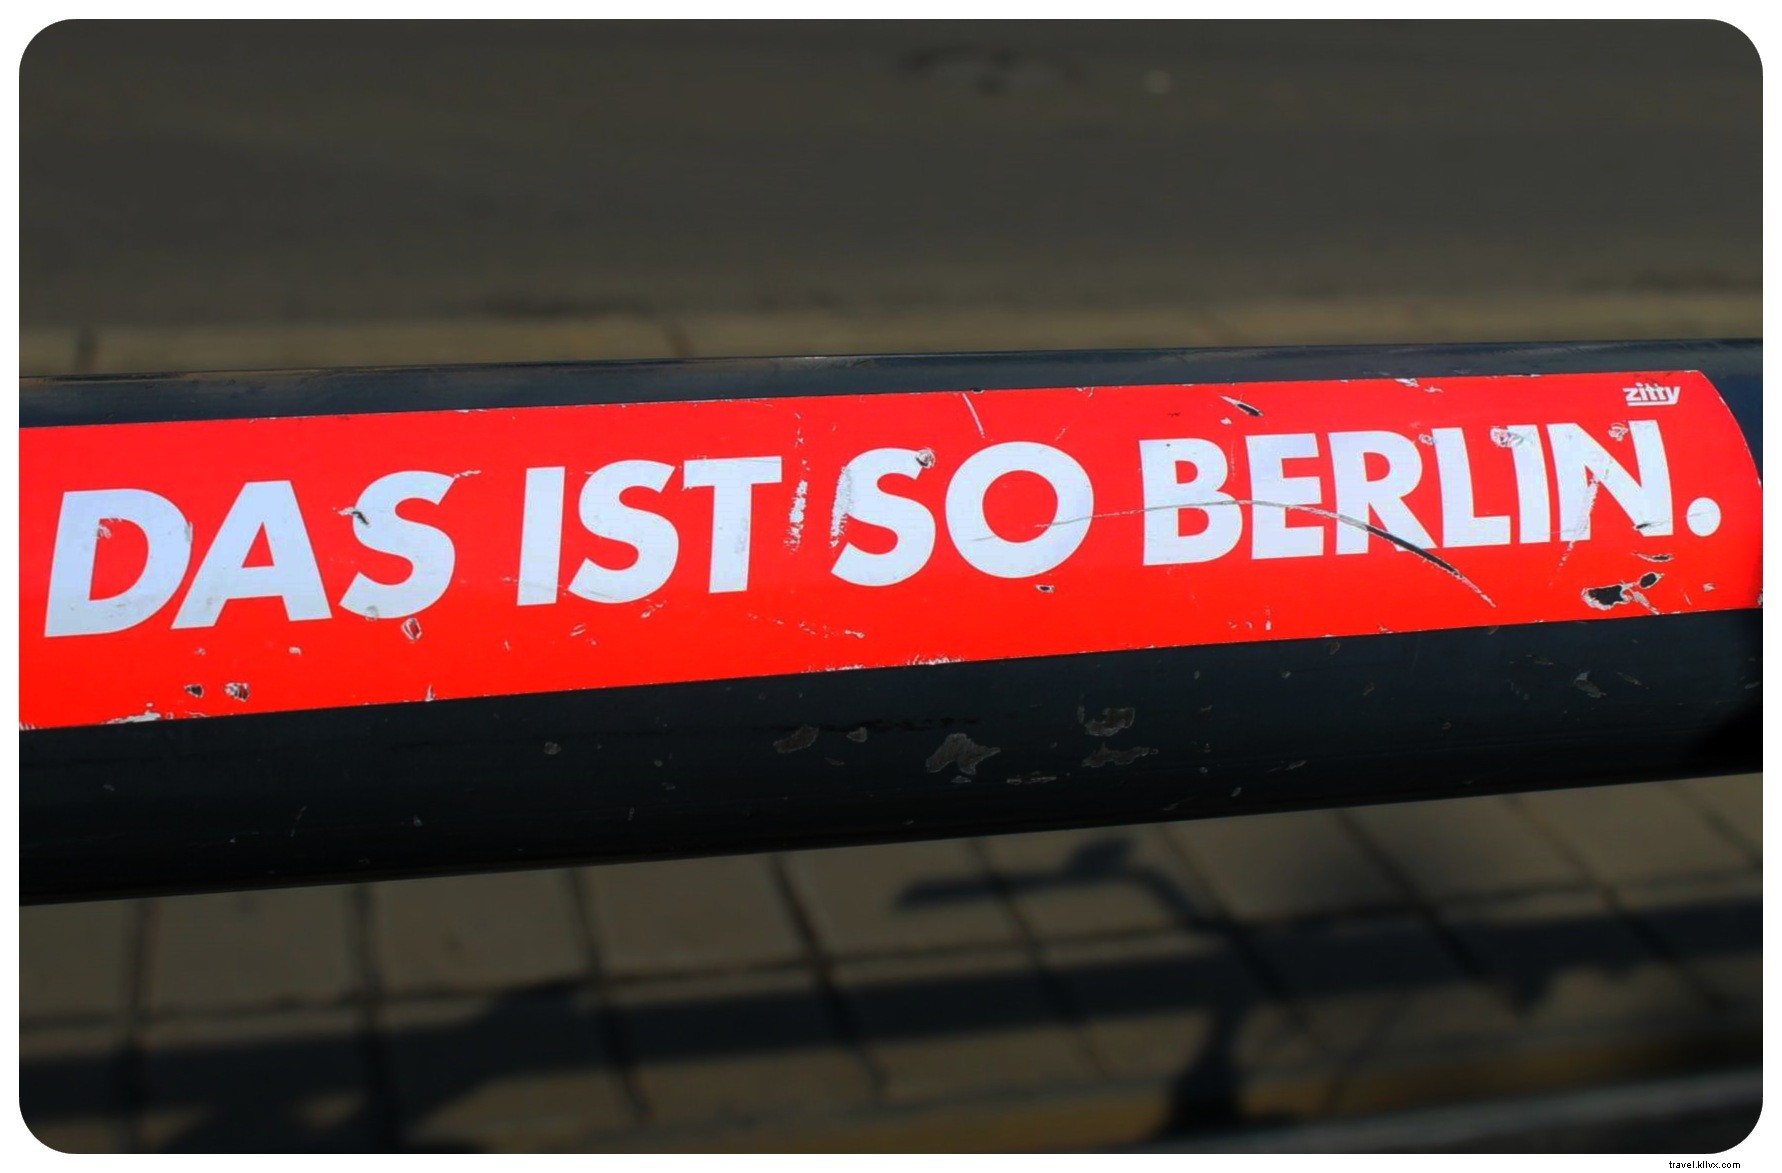 あなたを驚かせるかもしれないベルリンについての13の事柄